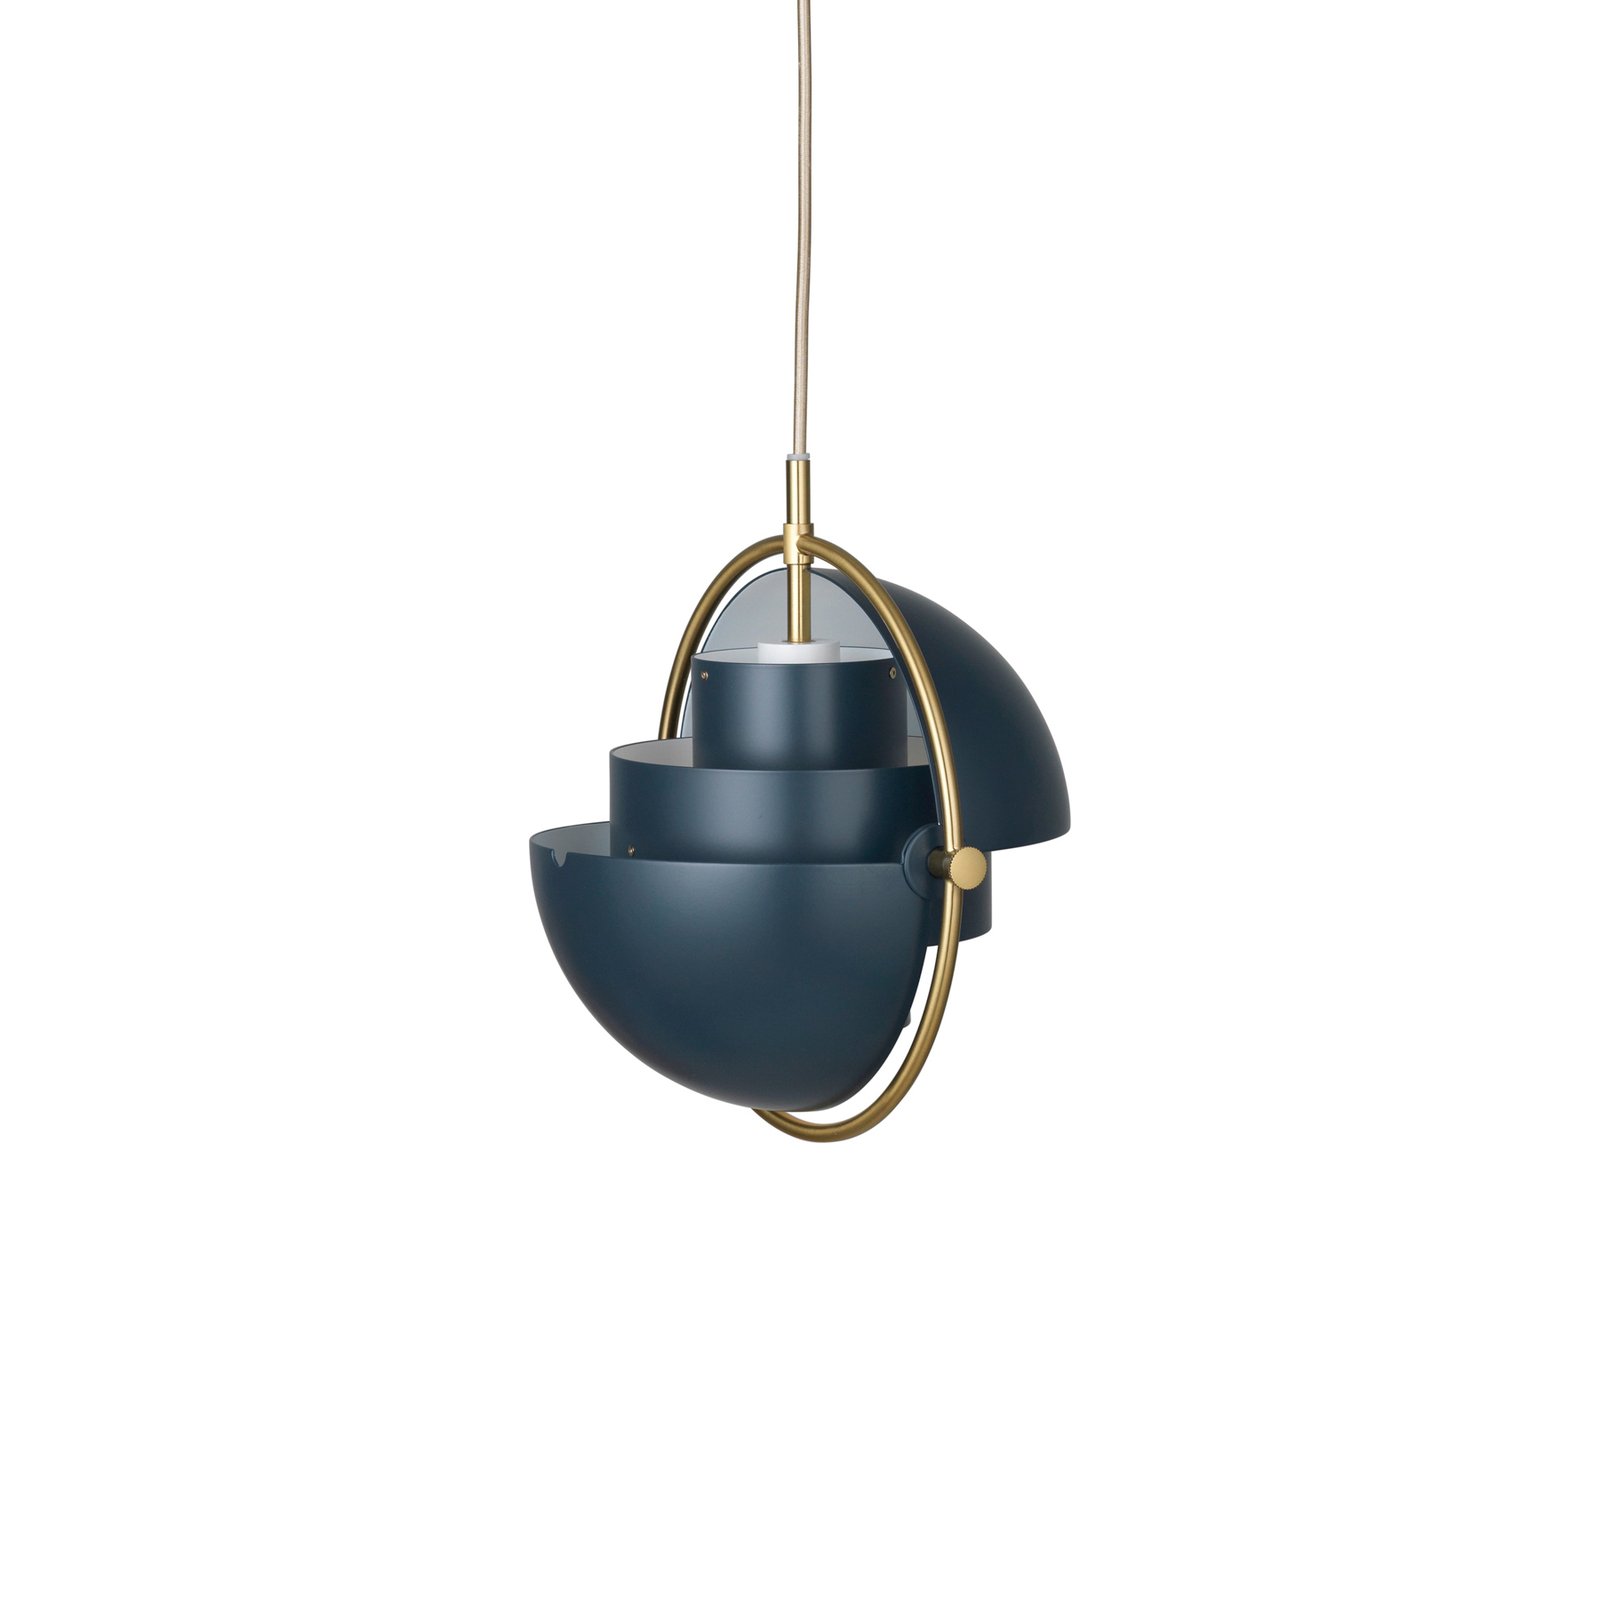 Gubi hanglamp Lite, Ø 27 cm, messing/donkerblauw